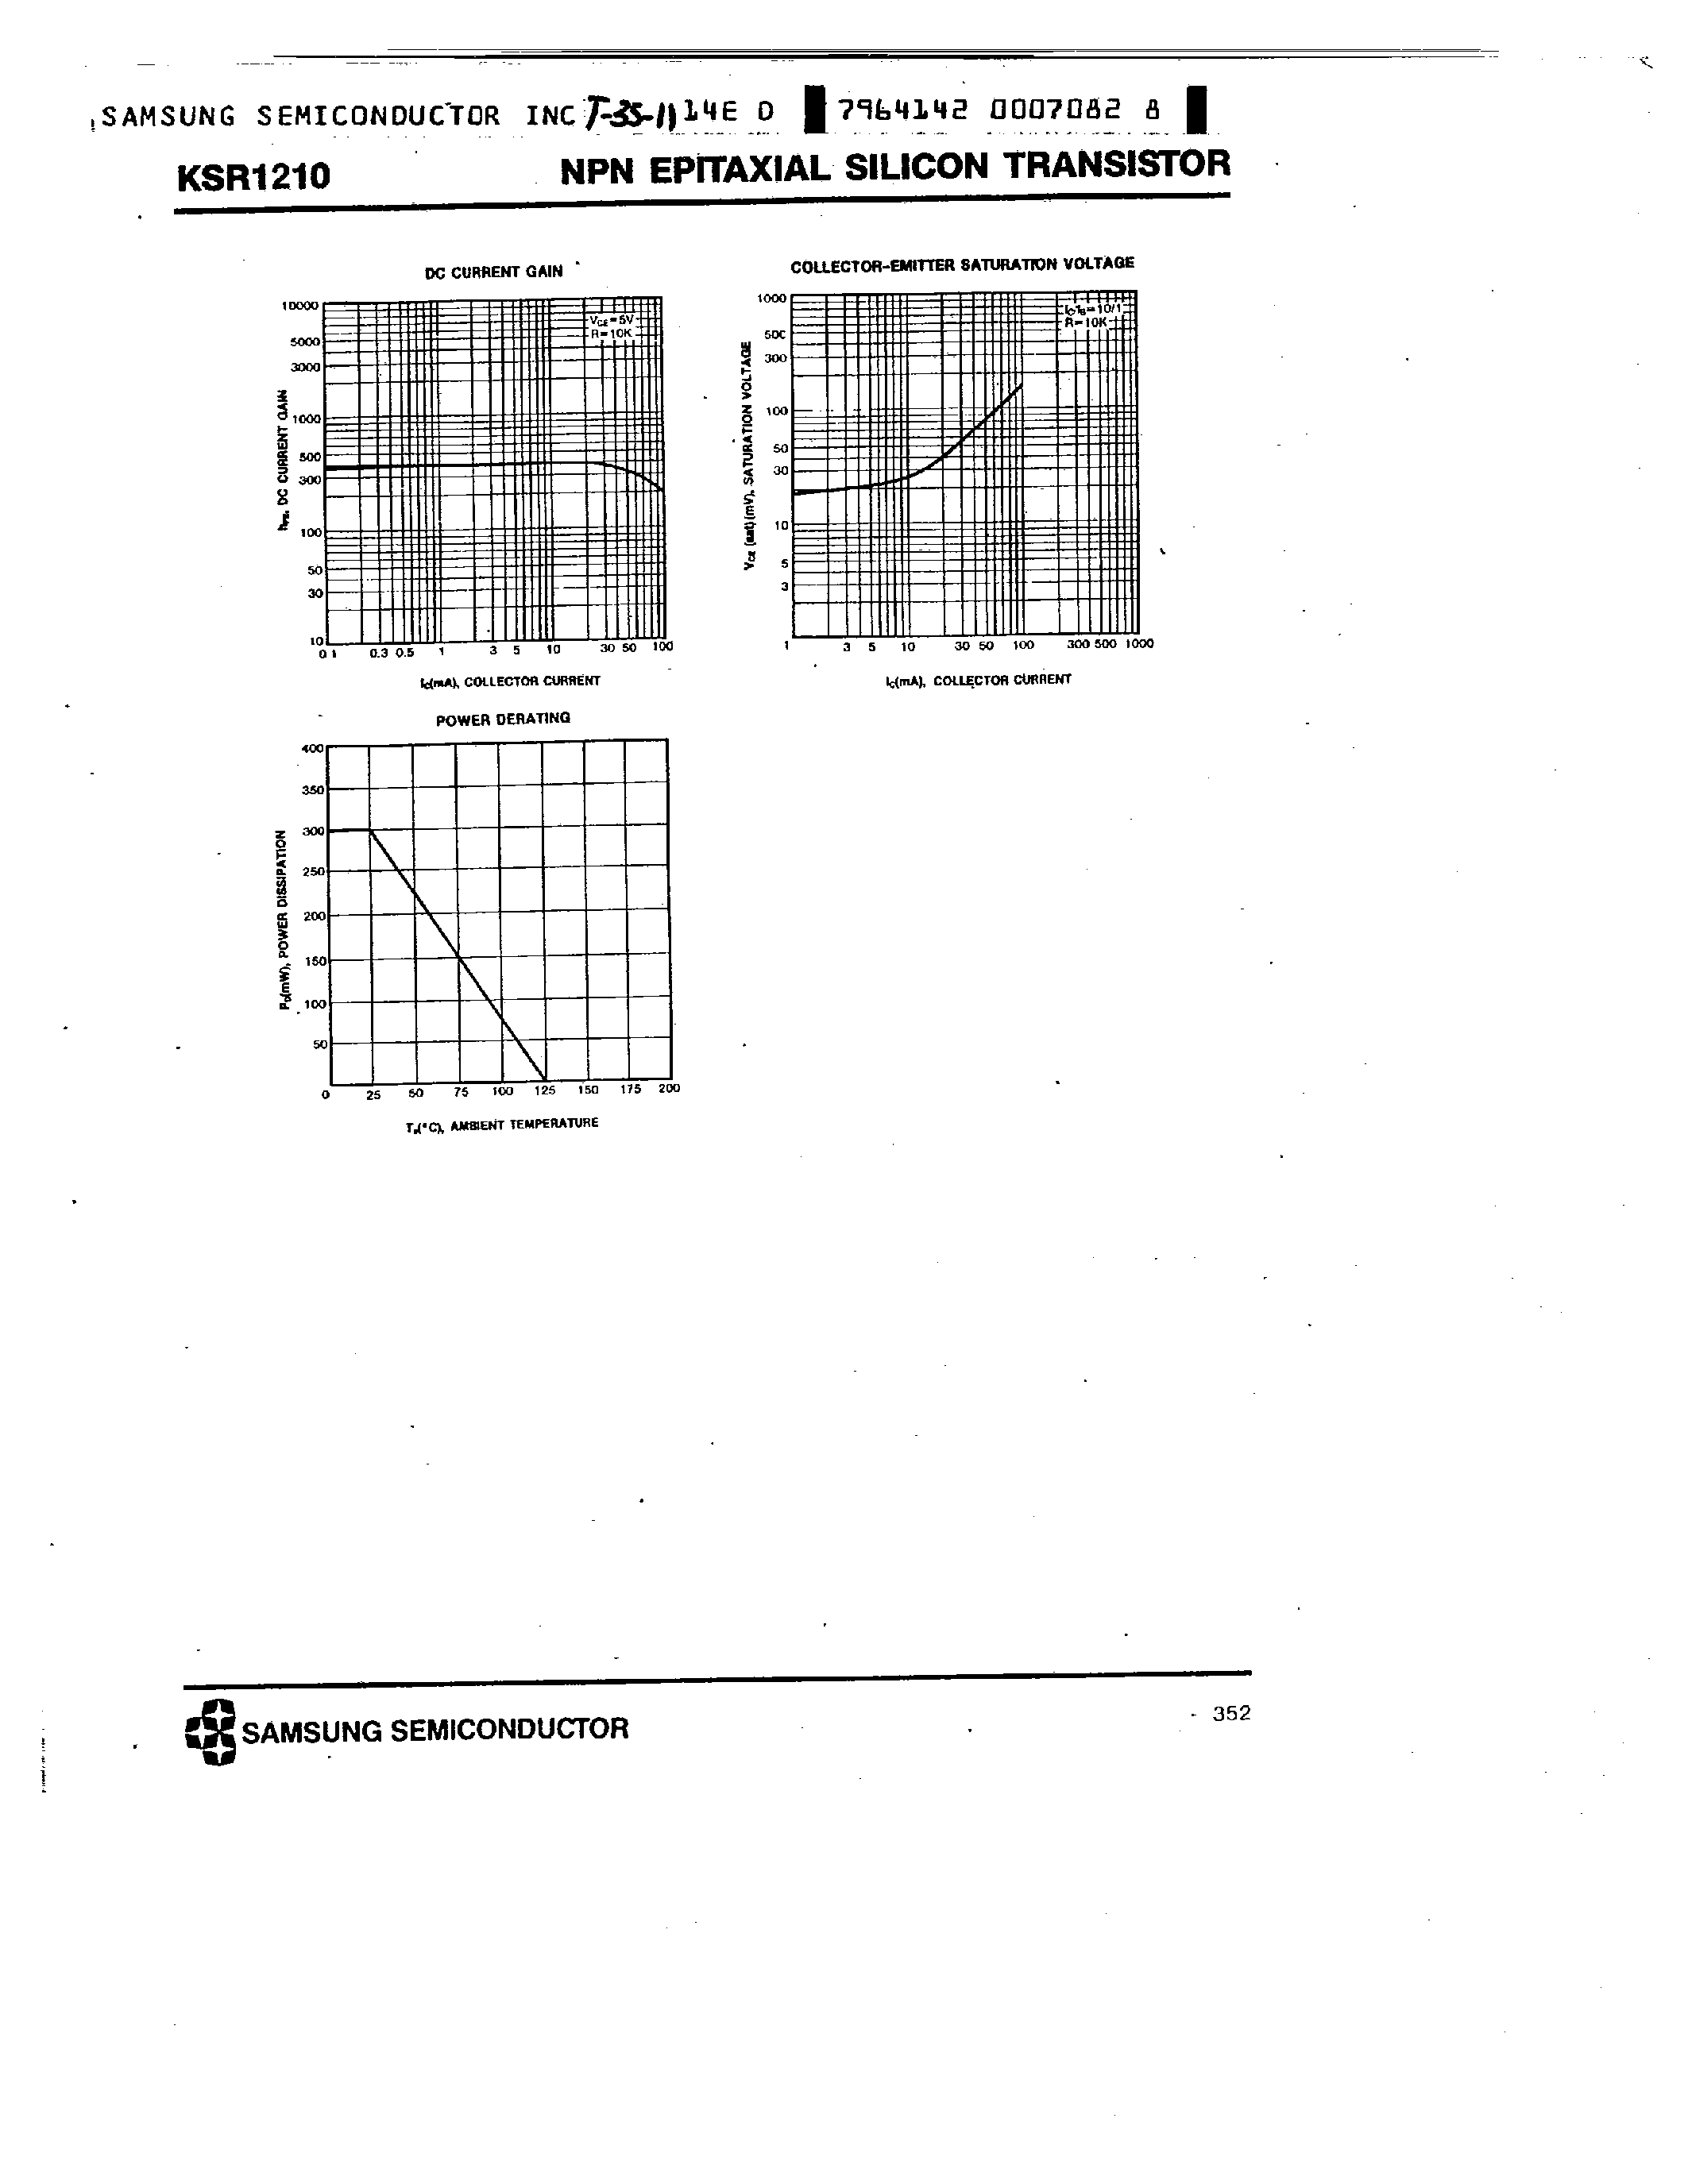 Datasheet KSR1210 - NPN (SWITCHING APPLICATION) page 2